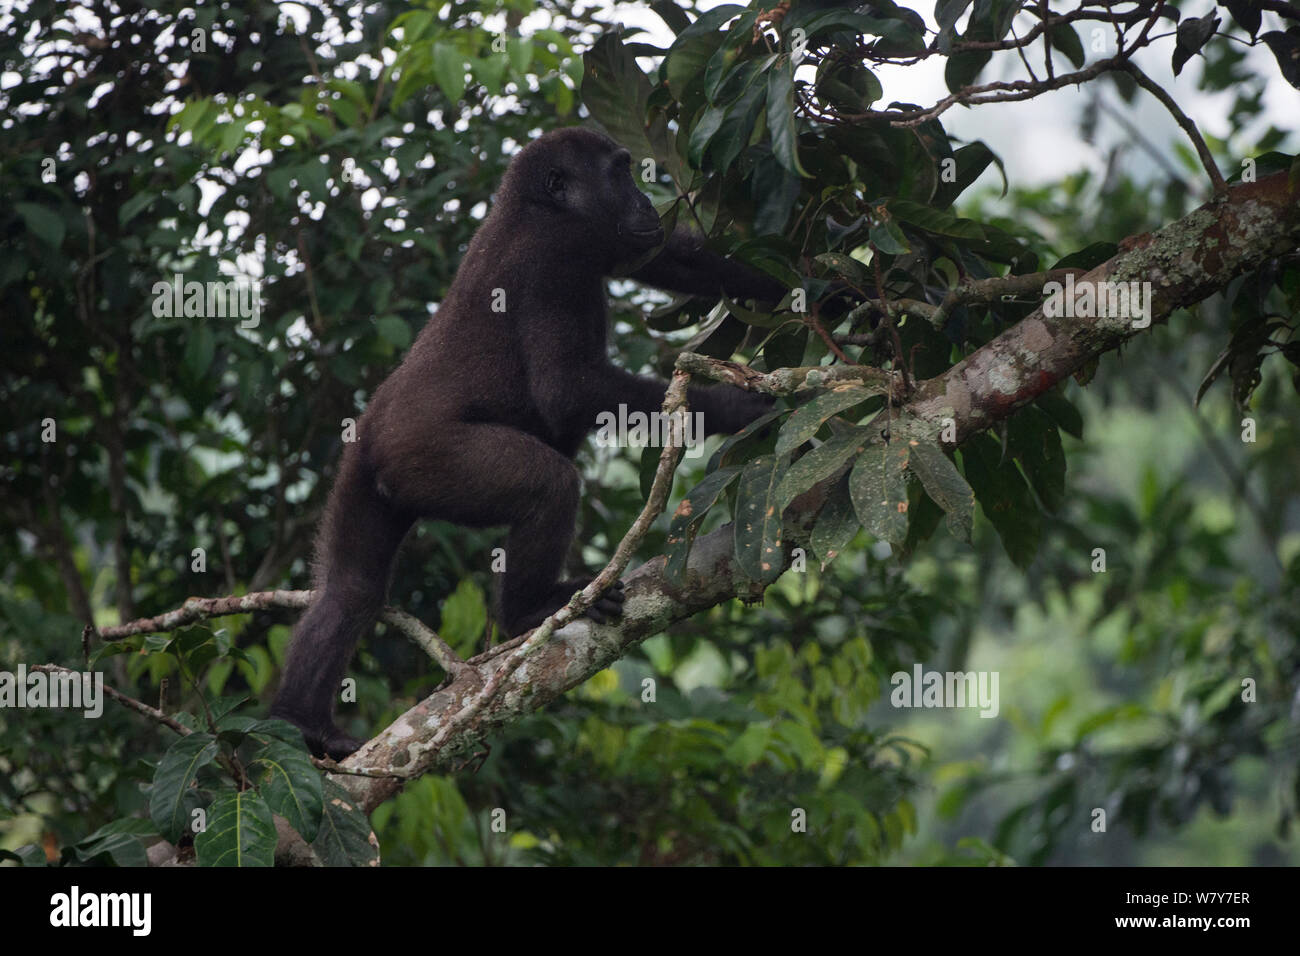 Western lowland gorilla (Gorilla gorilla gorilla) climbing fallen trunk. Ngaga, Odzala-Kokoua National Park, Republic of Congo (Congo-Brazzaville), Africa. Critically Endangered species. Stock Photo